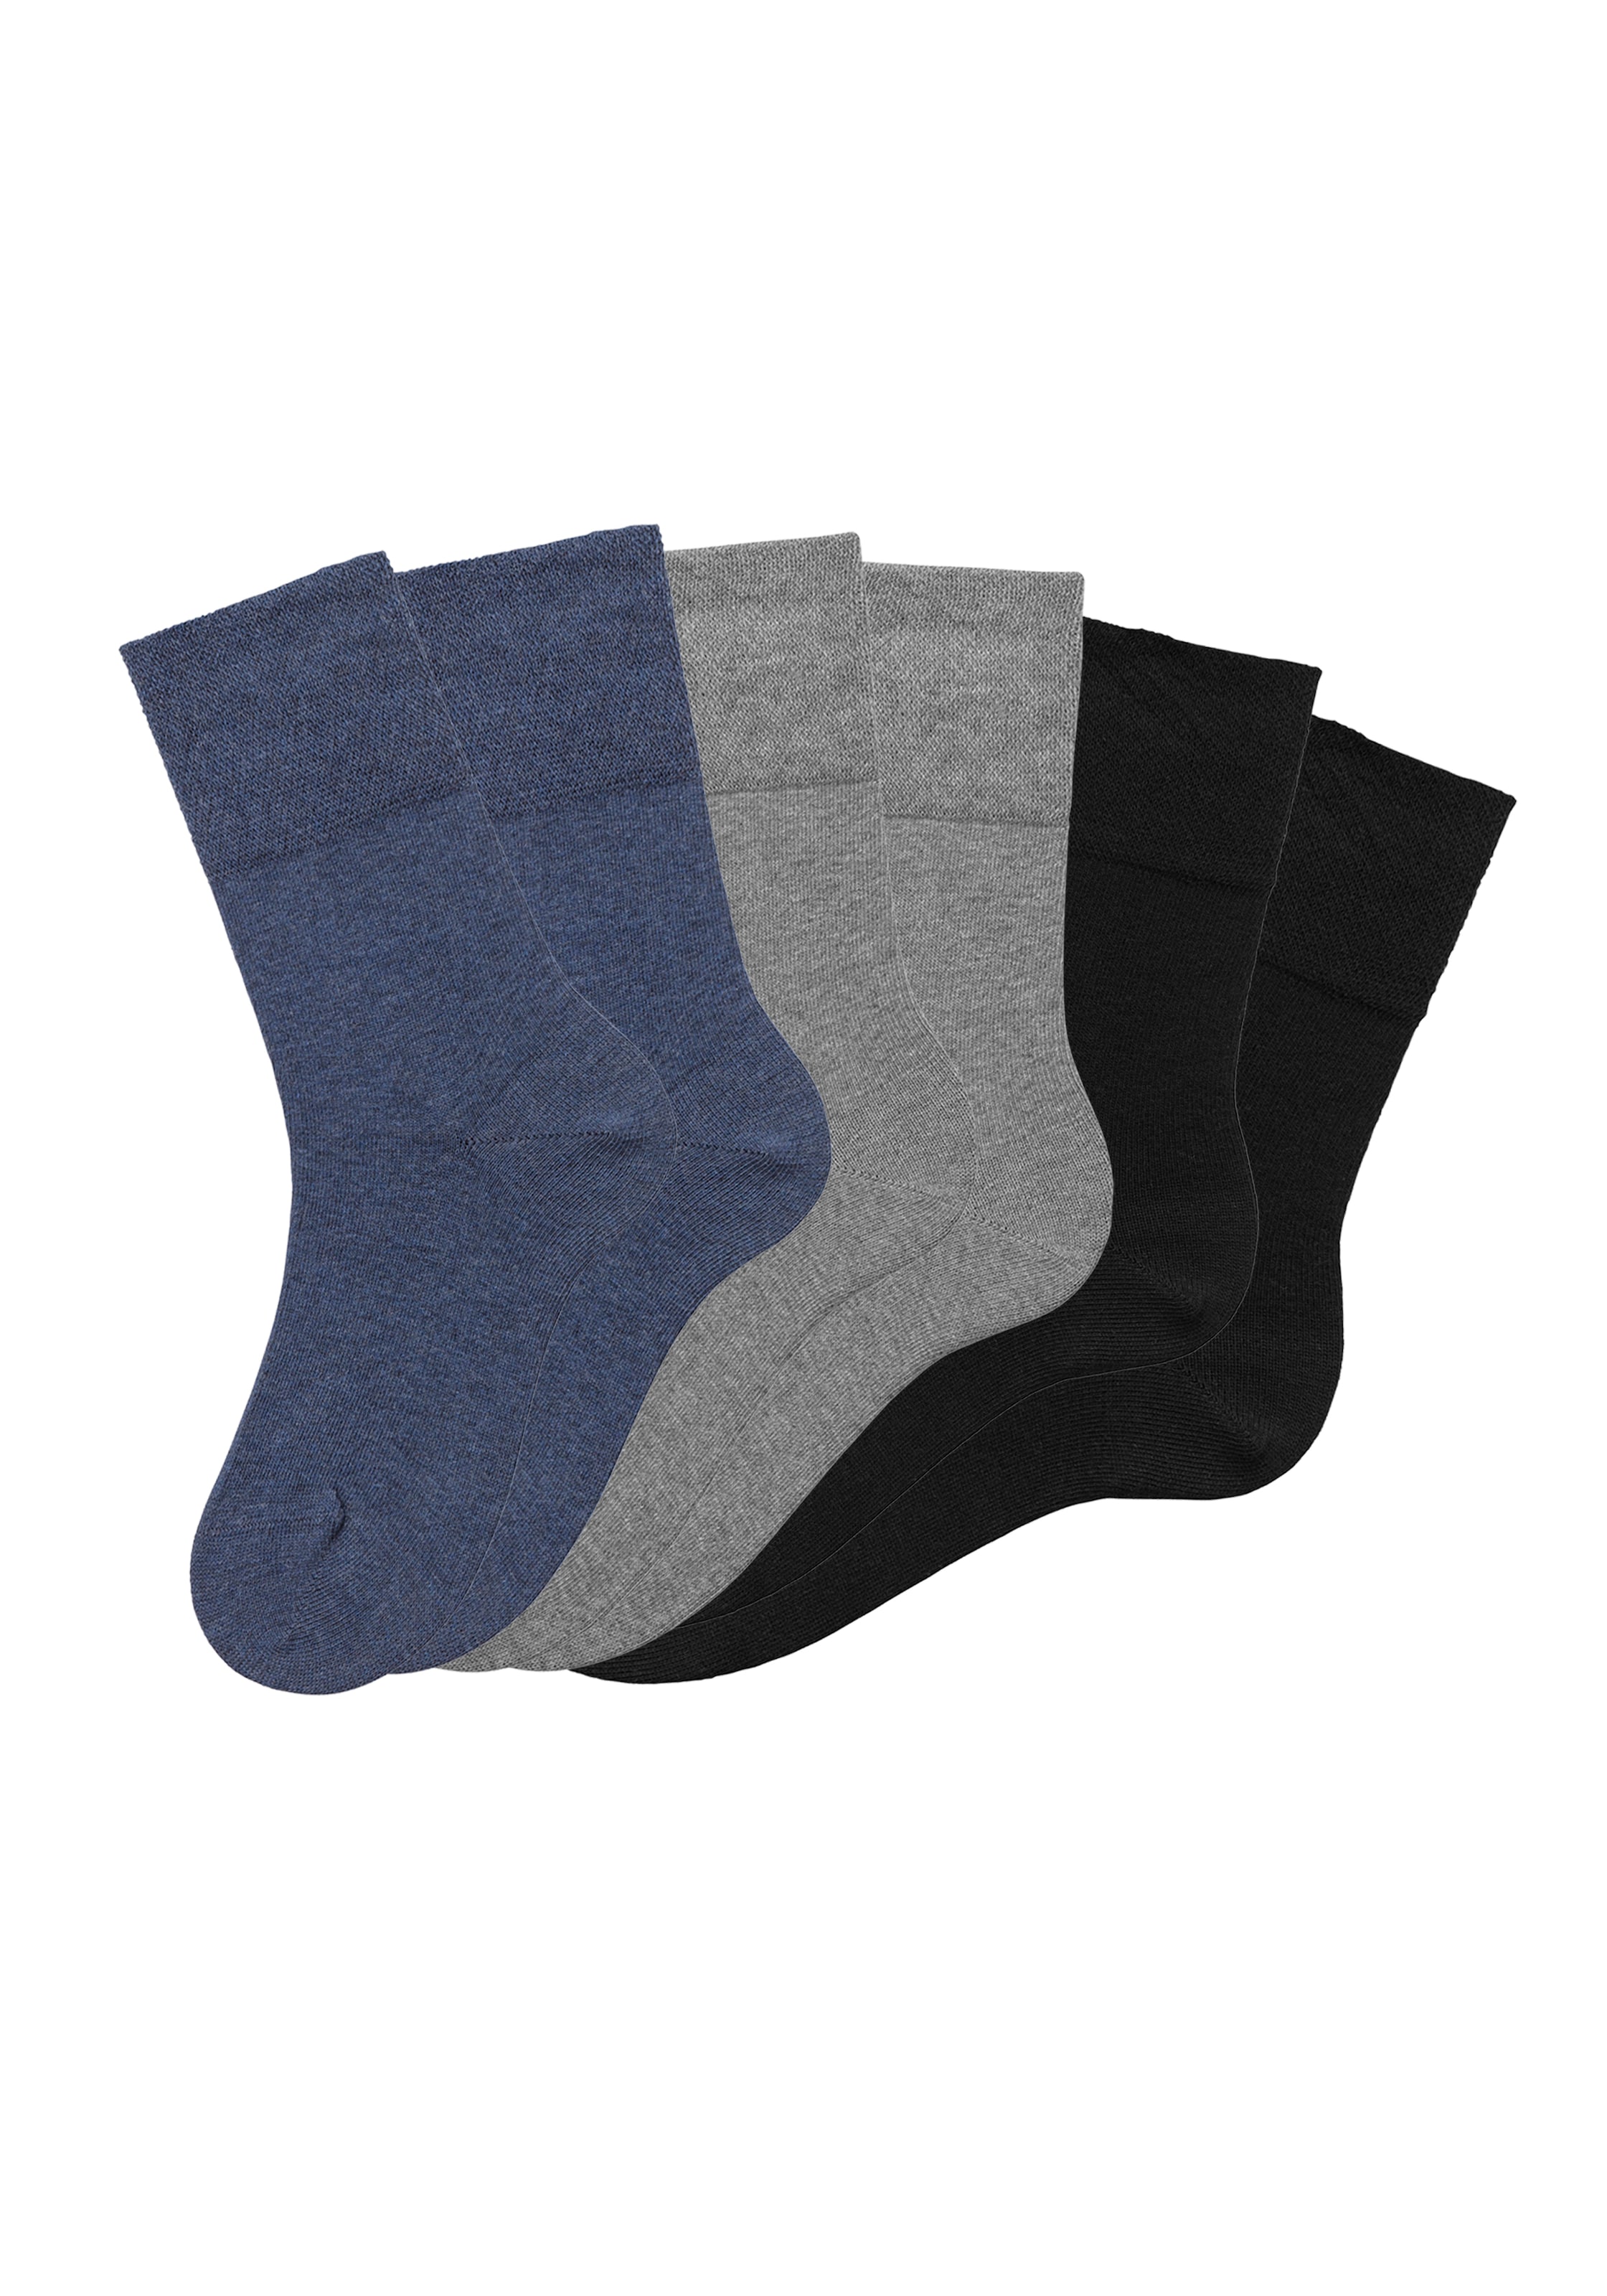 H.I.S Socken, (Set, 6 Paar), mit Komfortbund auch für Diabetiker geeignet